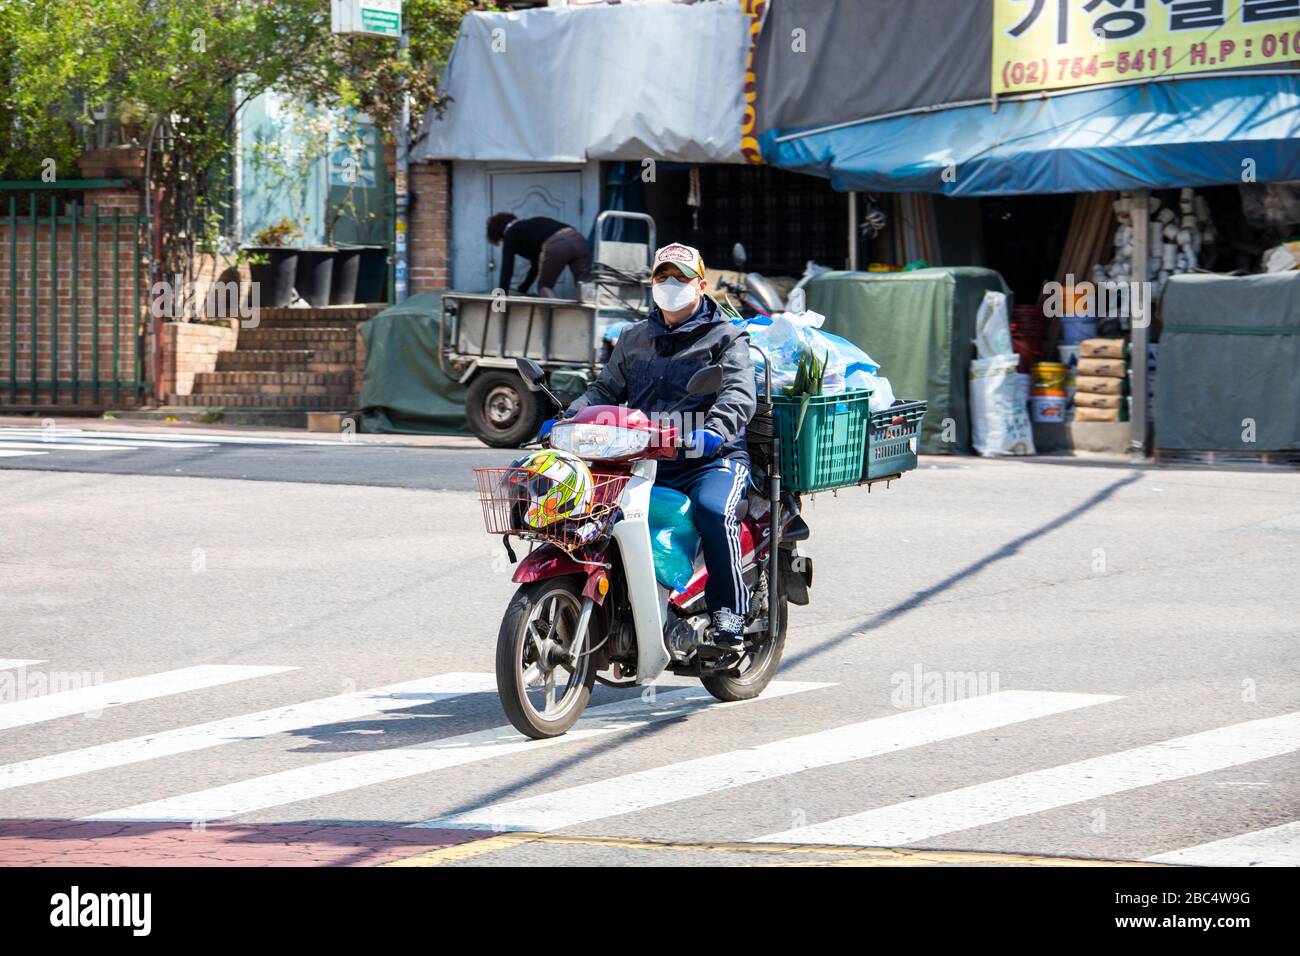 Consegna moto indossando una maschera durante la pandemia di Coronavirus, Seoul, Corea del Sud Foto Stock